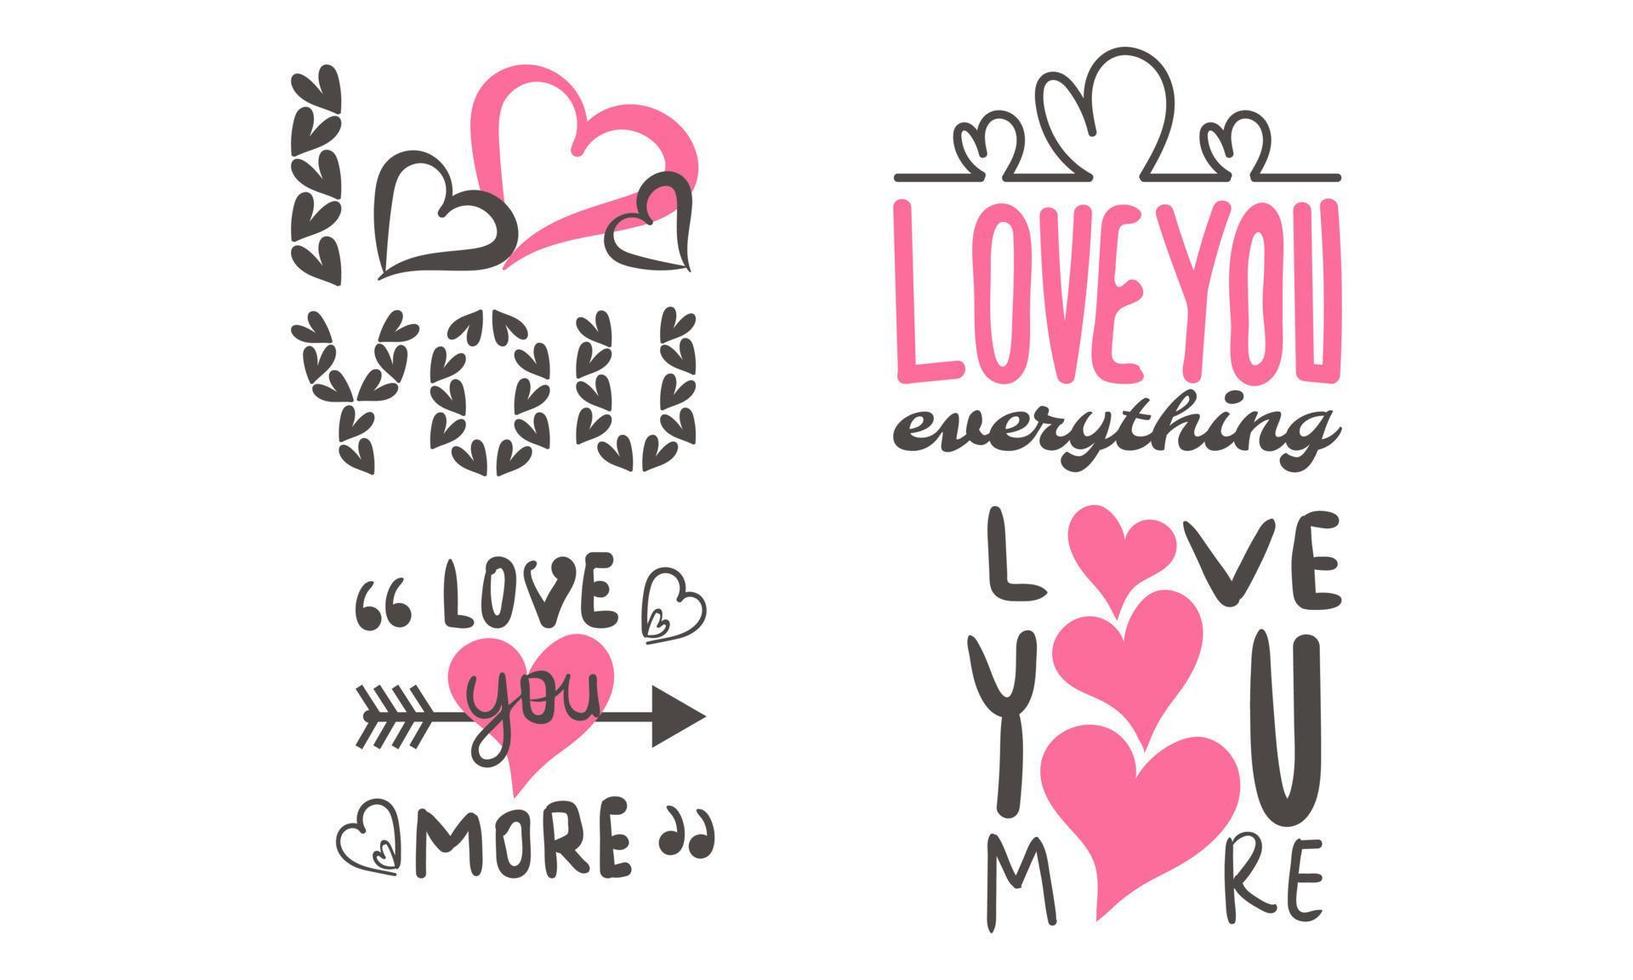 carte de Saint Valentin, amour, écoute. affiche de typographie avec texte dessiné à la main et vecteur d'éléments graphiques